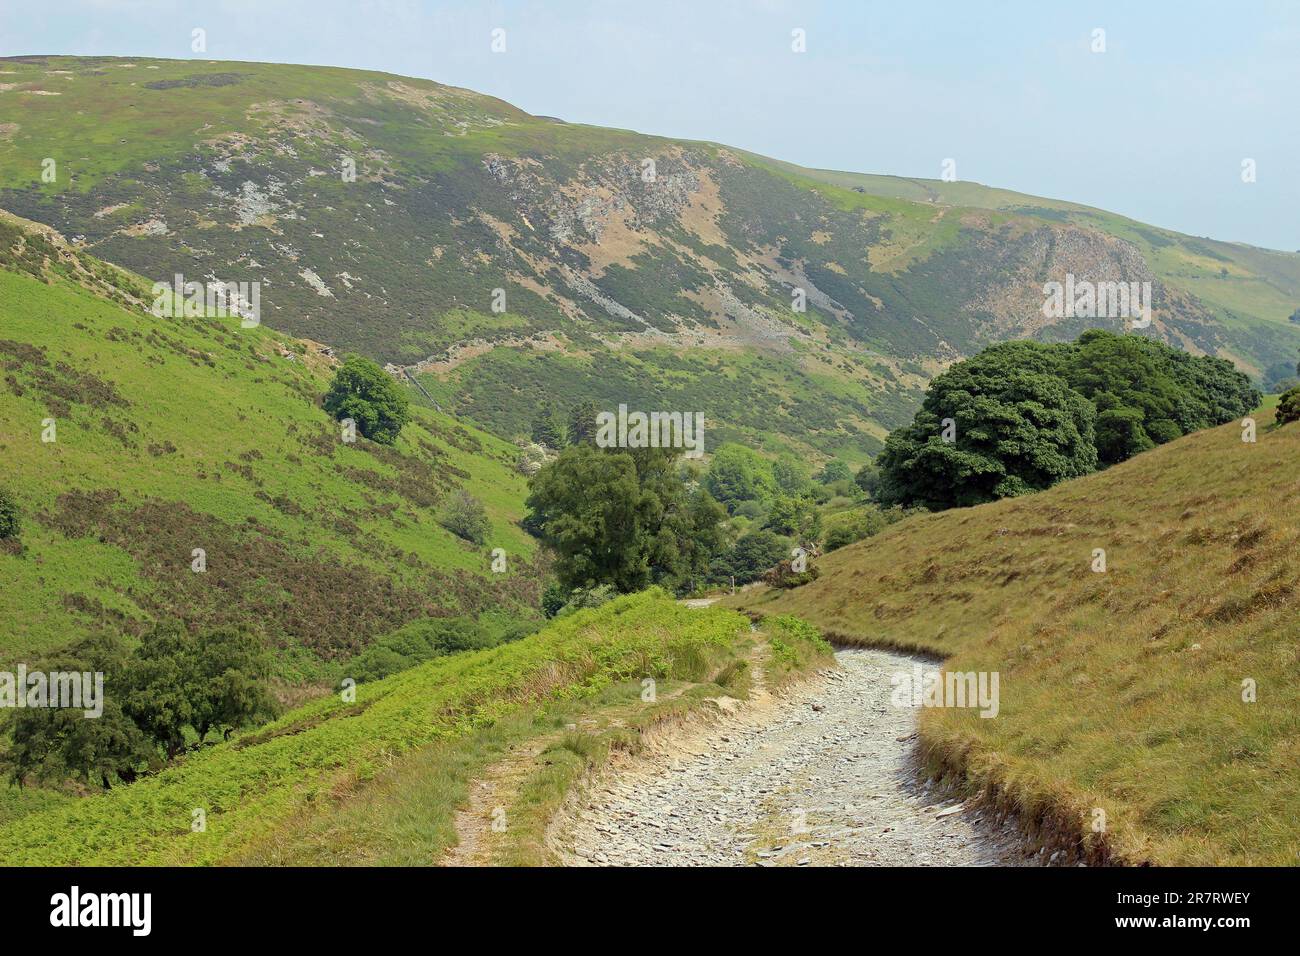 Fußweg in den Berwyns über dem Dorf Pentre Bach, Ceiriog Valley, Wales - Graig Fawr in der Ferne Stockfoto